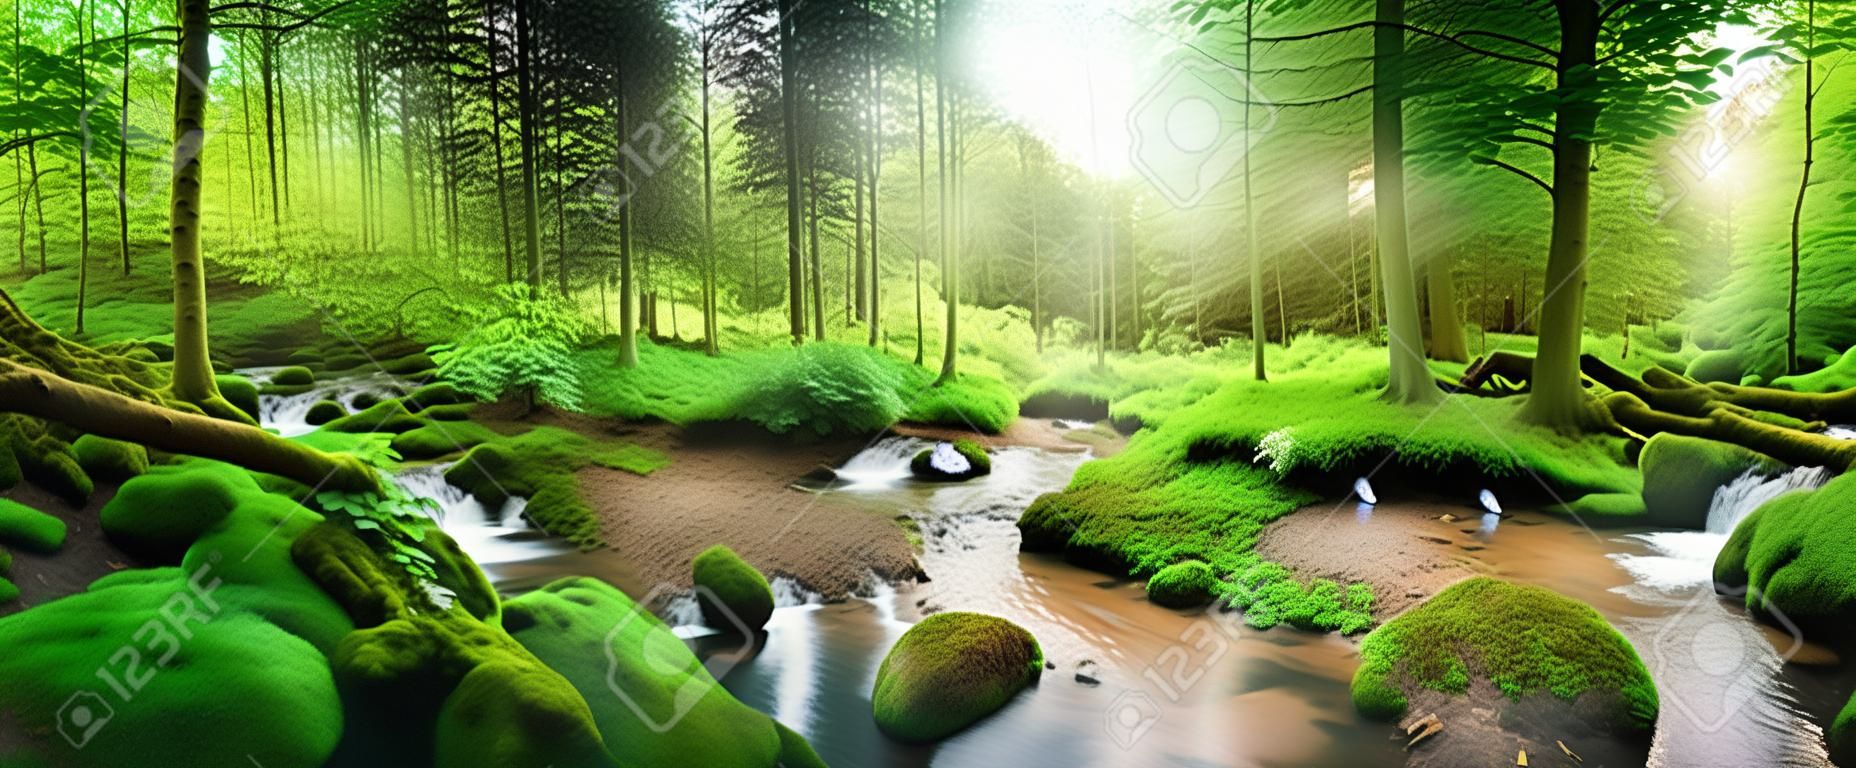 Enchanting Panoramawaldlandschaft mit weichem Licht durch das Laub fällt, einen Strom mit ruhigem Wasser und einem Reiher